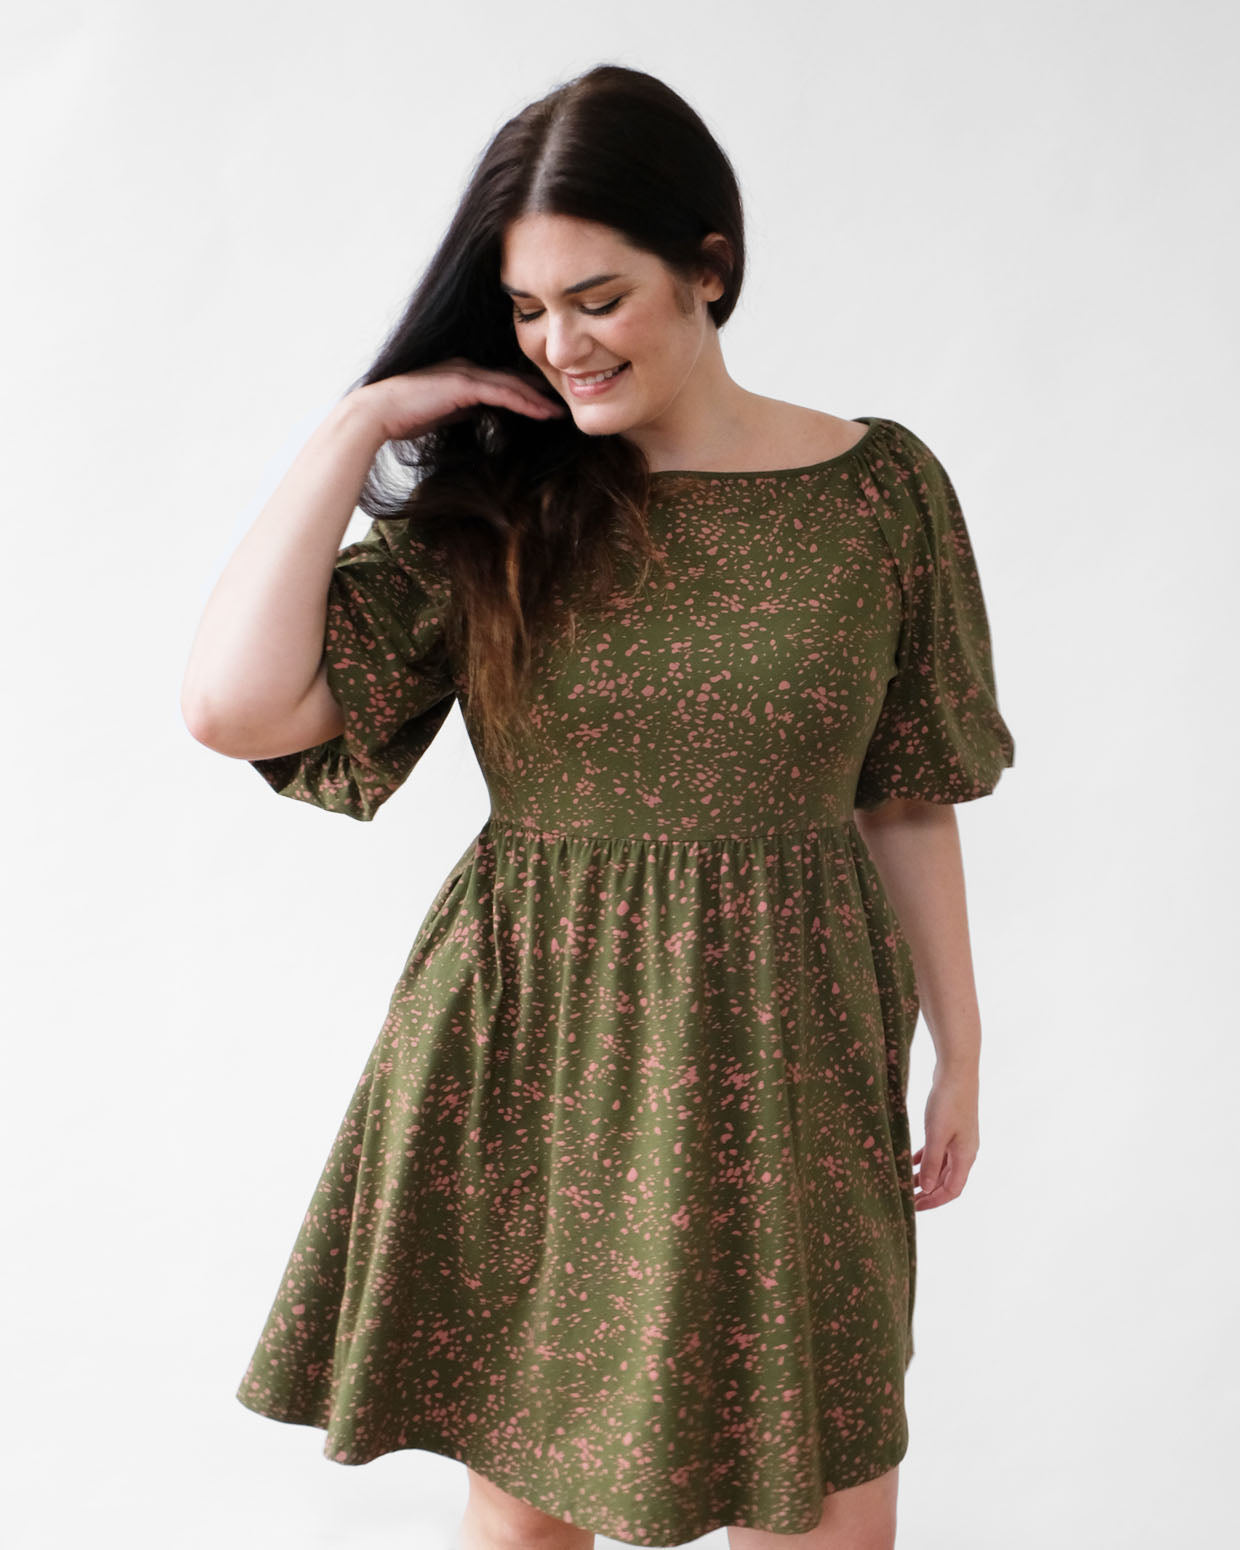 SADIE printed dress in Olive/Clay